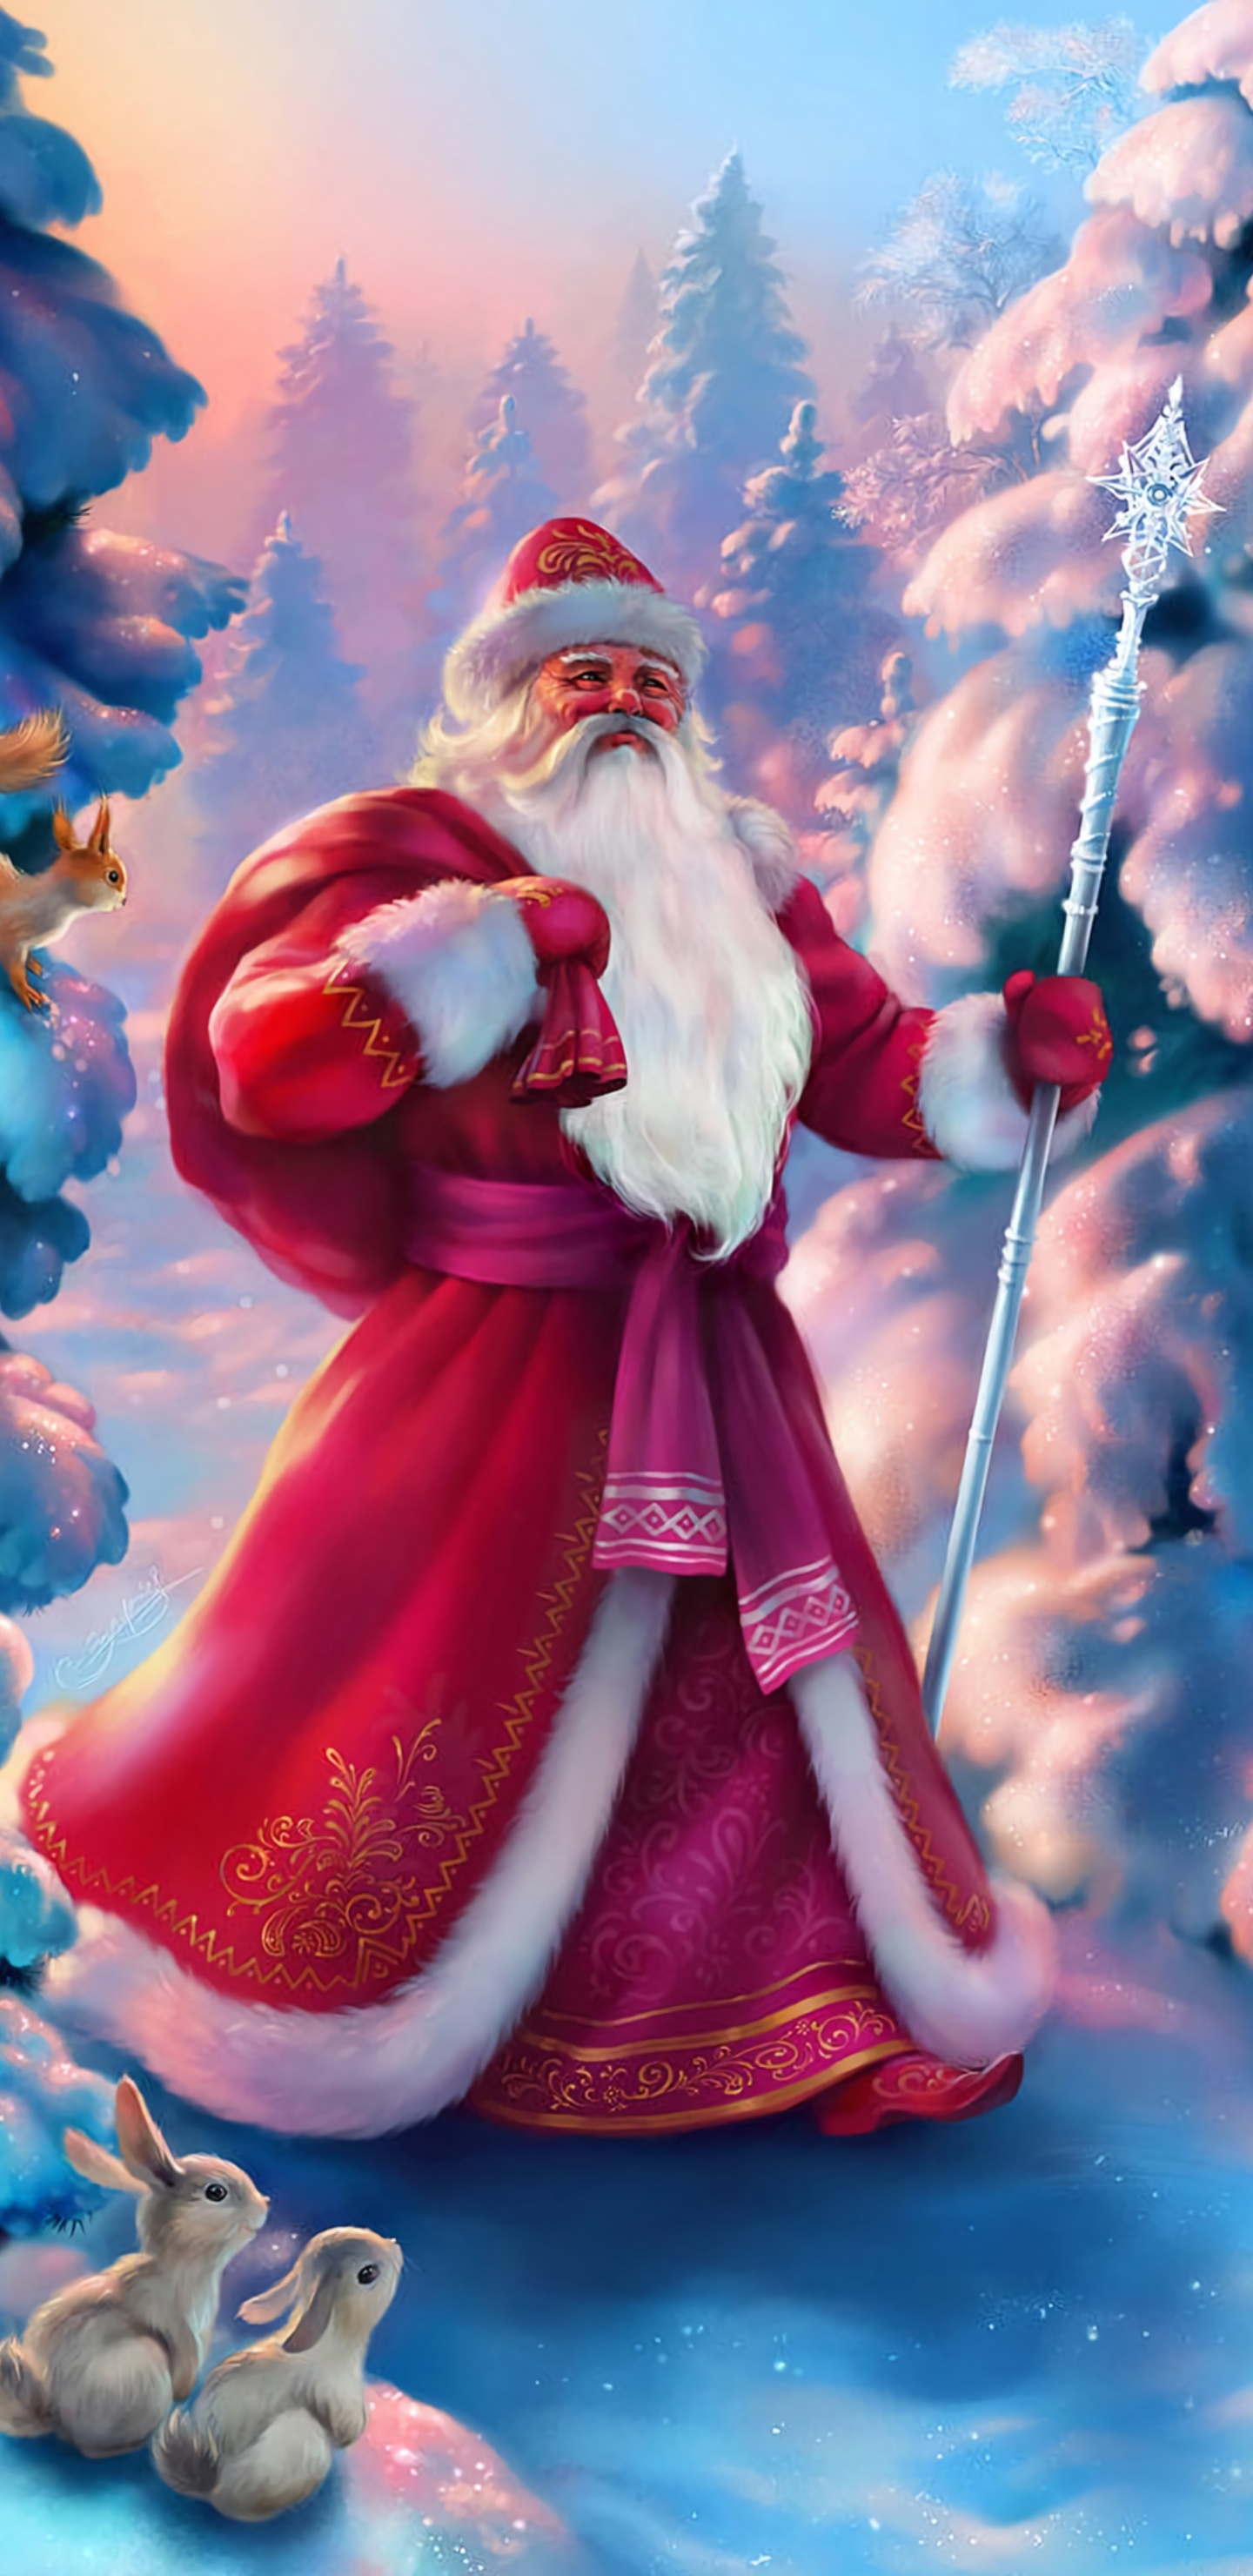 Weihnachtsmann, Ded Moroz, Weihnachten, Animation, Pink. Wallpaper in 1440x2960 Resolution